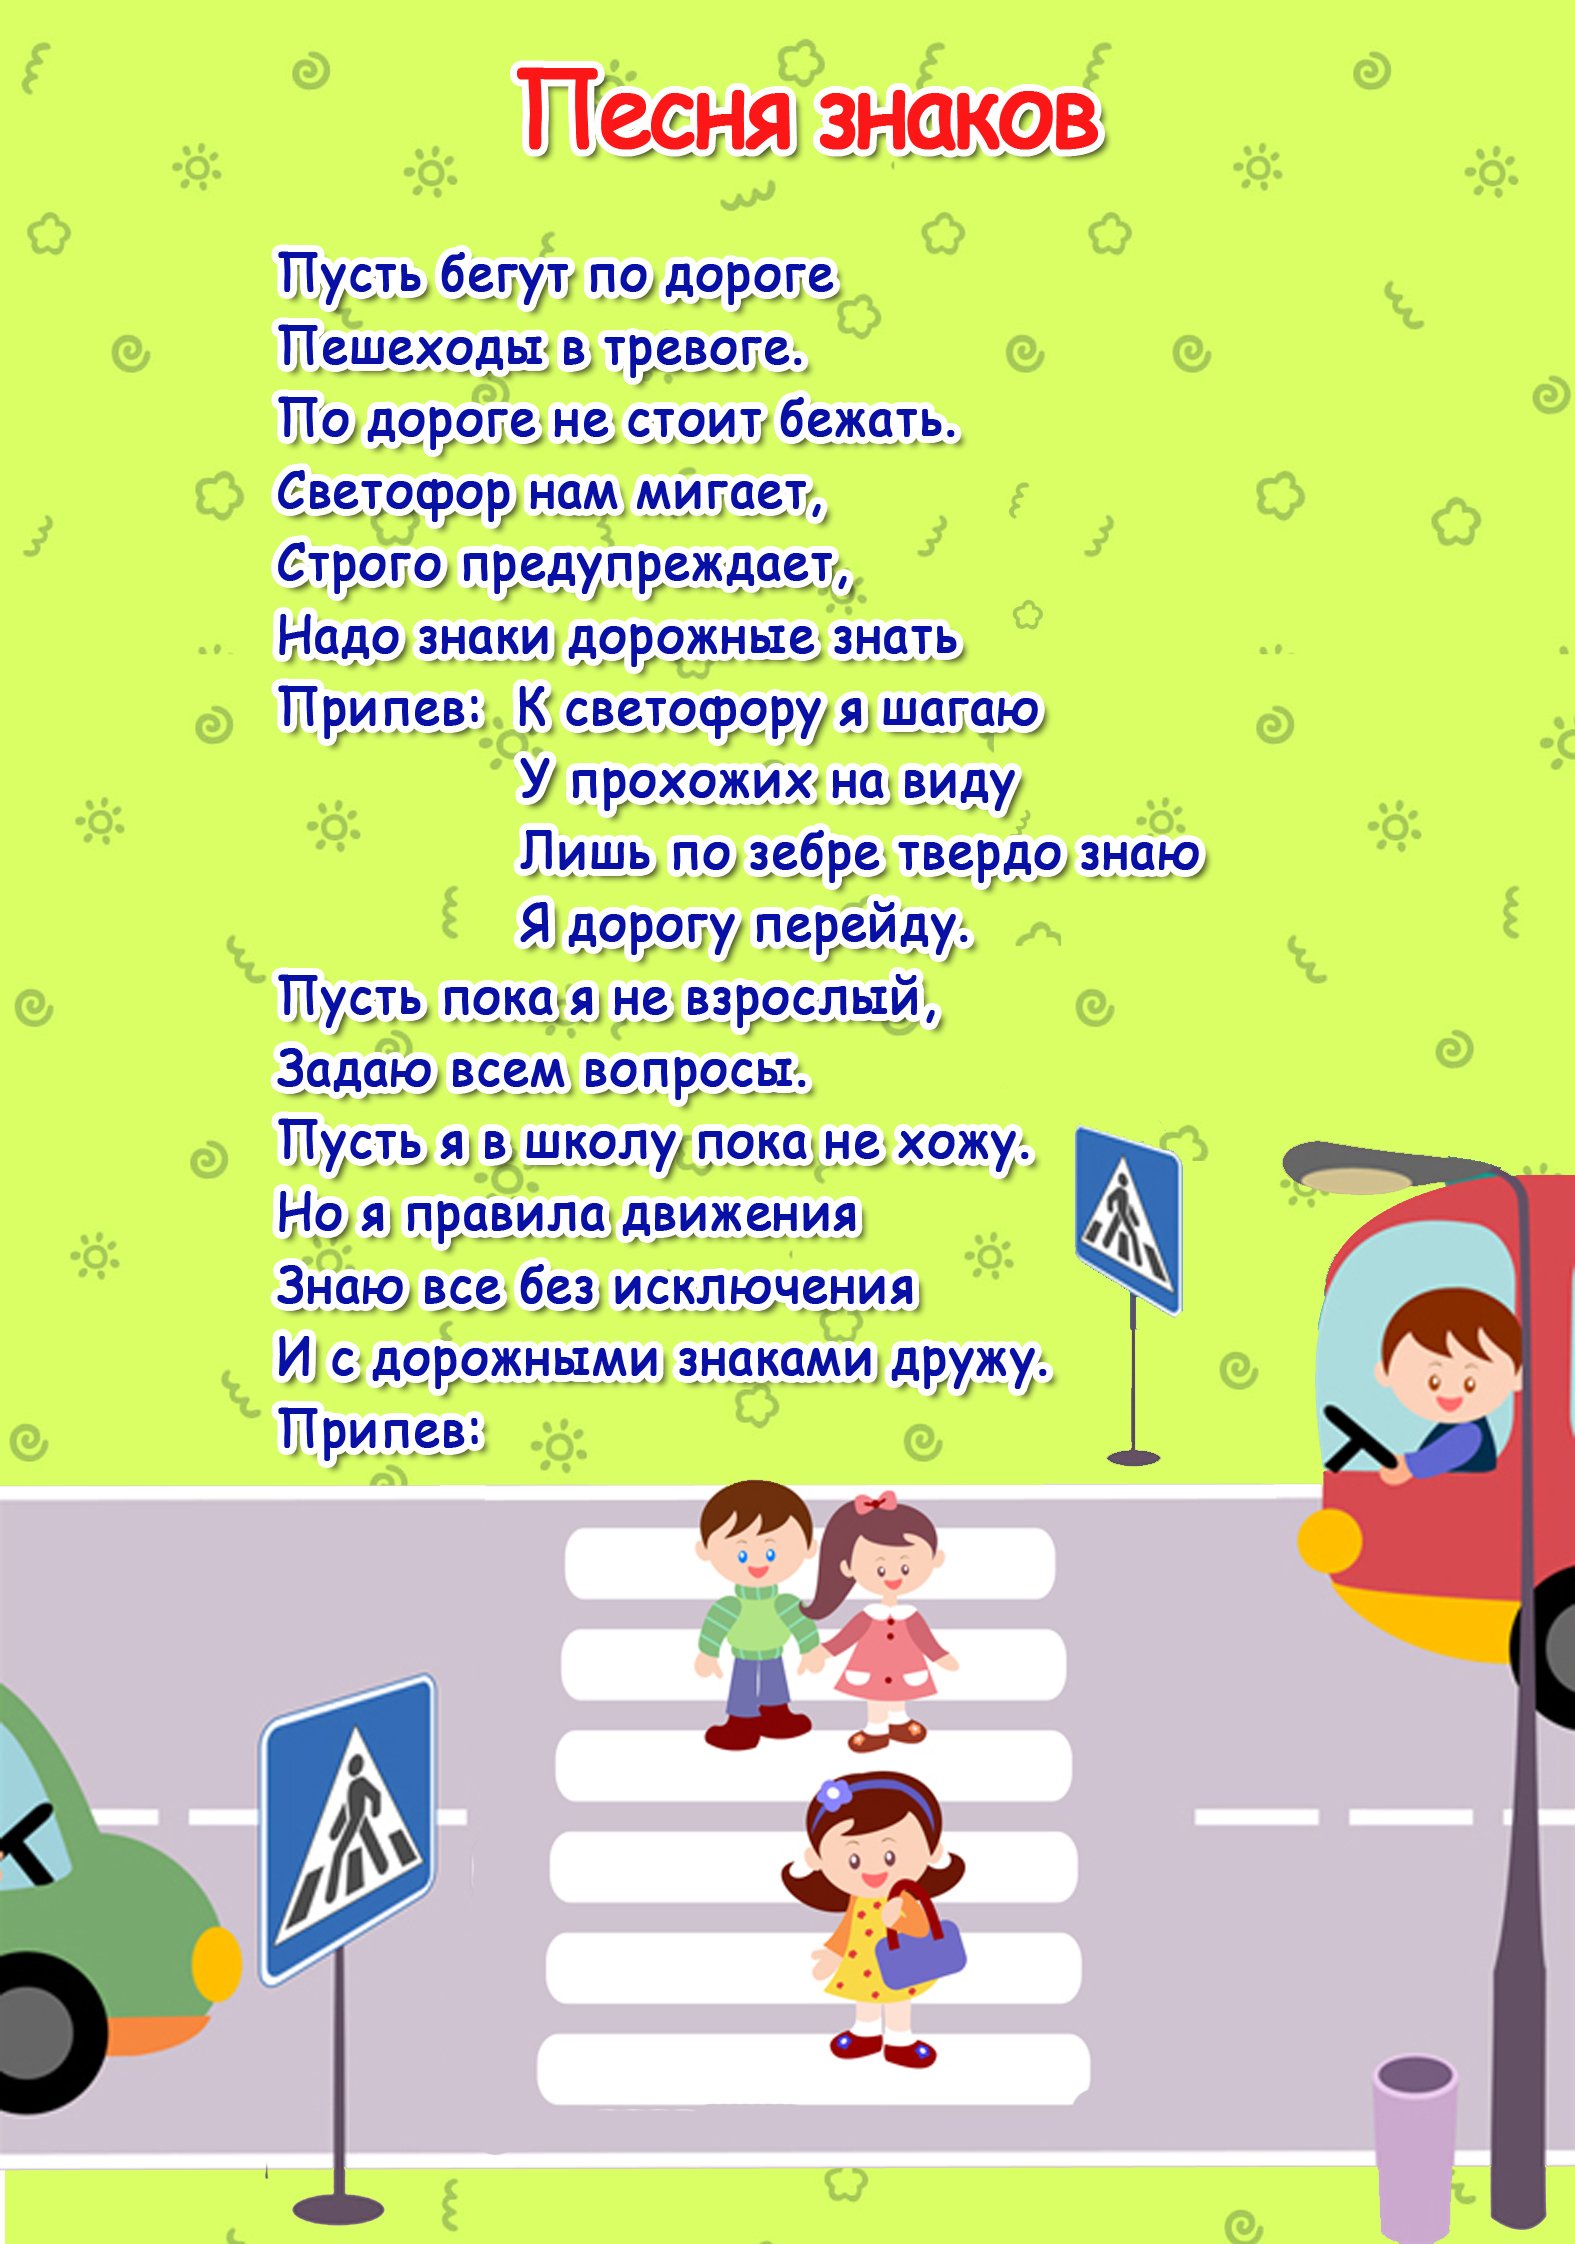 Слушать песню дороги детская. Стихи по правилам дорожного движения. ПДД для детей. Правила дорожного движения для детей. Стихи про ПДД для детей.